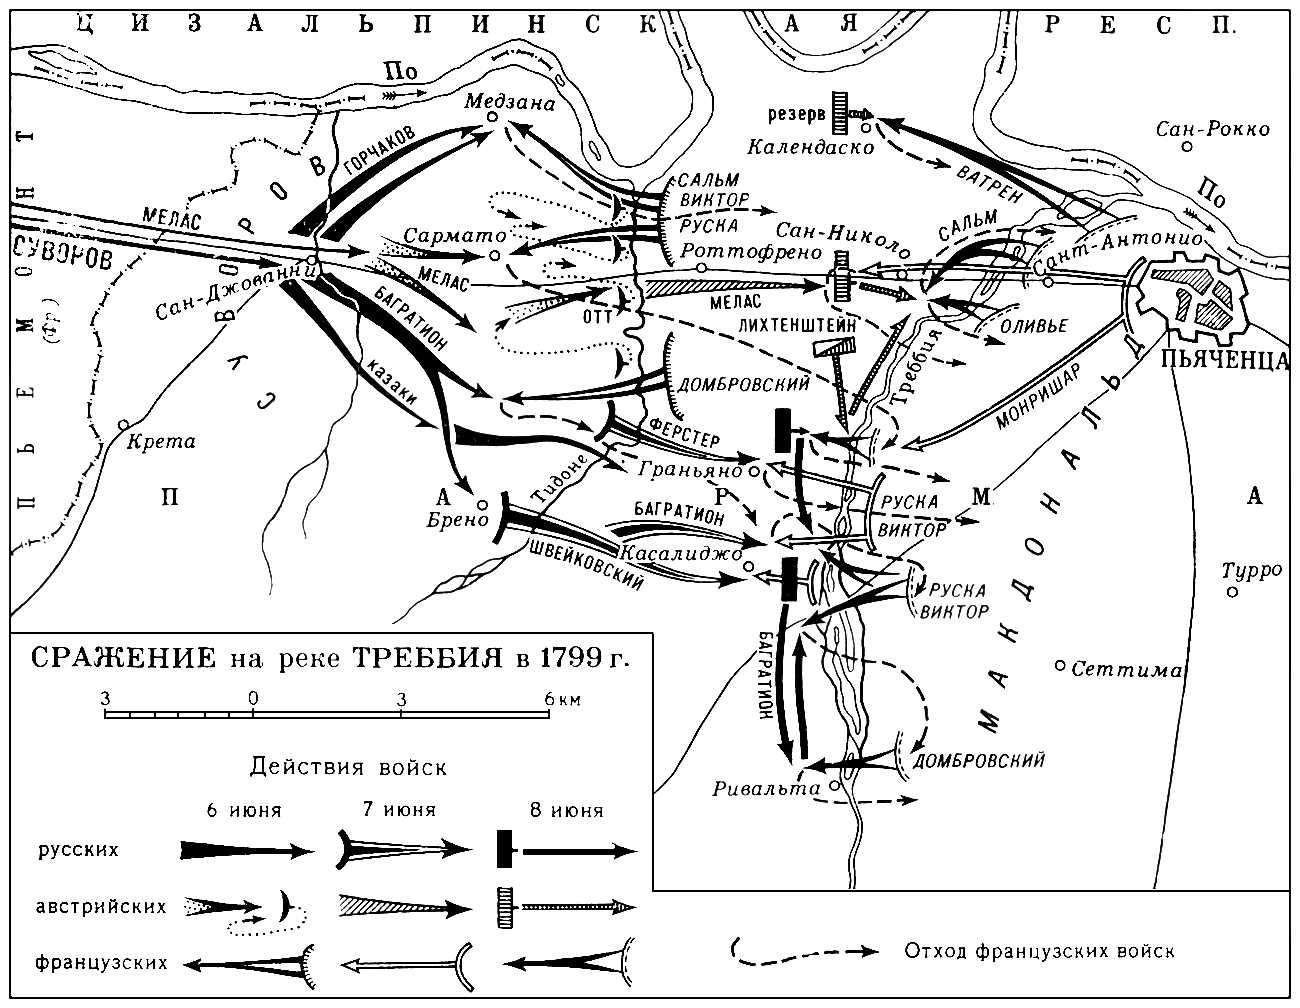 Сражение на реке Треббия